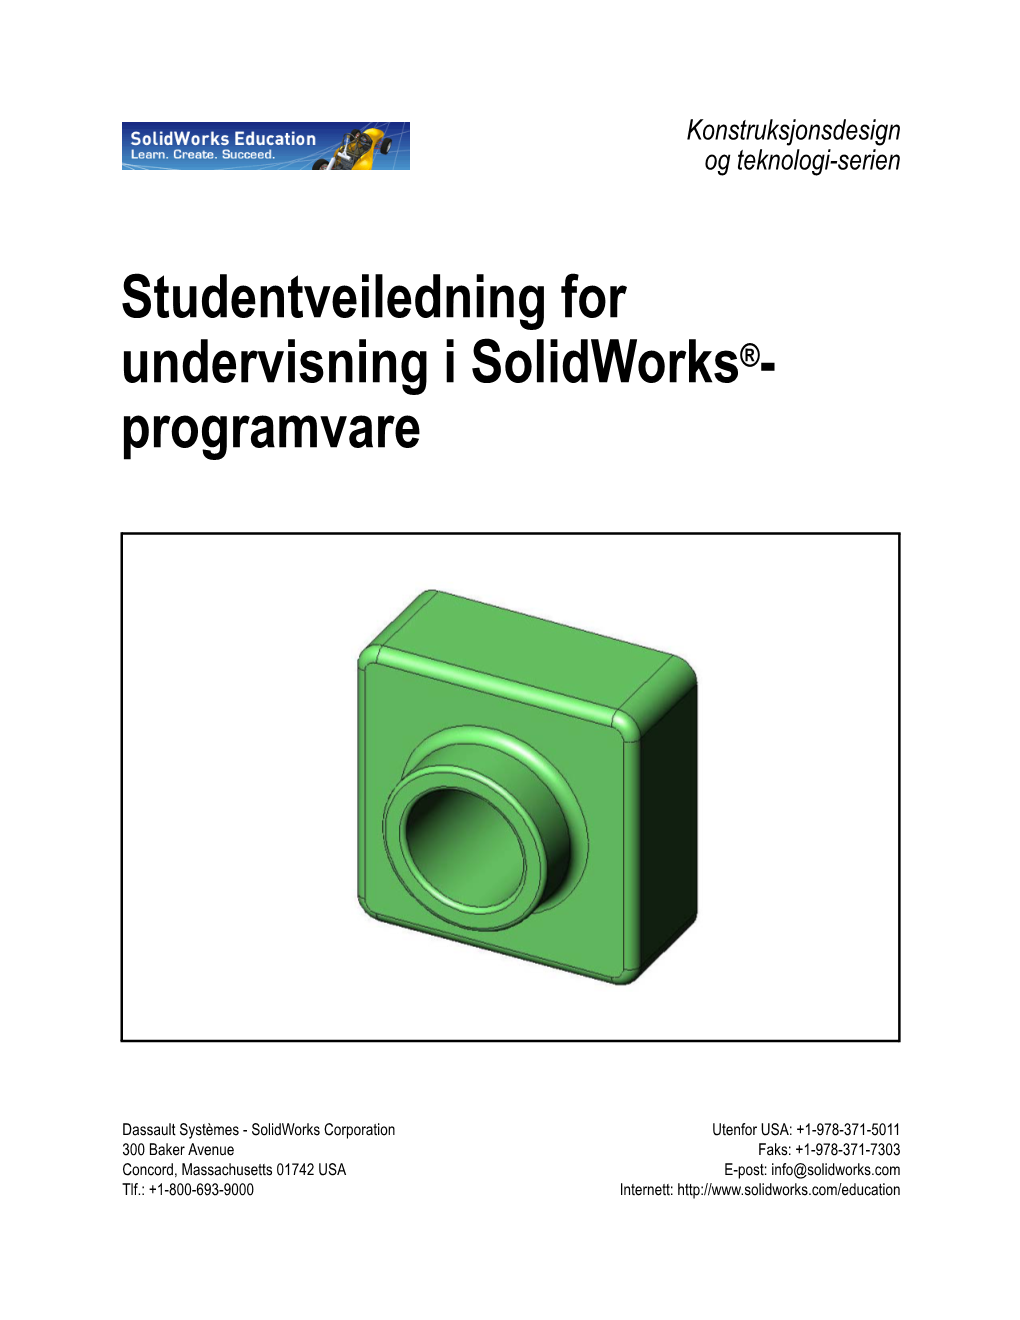 Studentveiledning for Undervisning I Solidworks®- Programvare